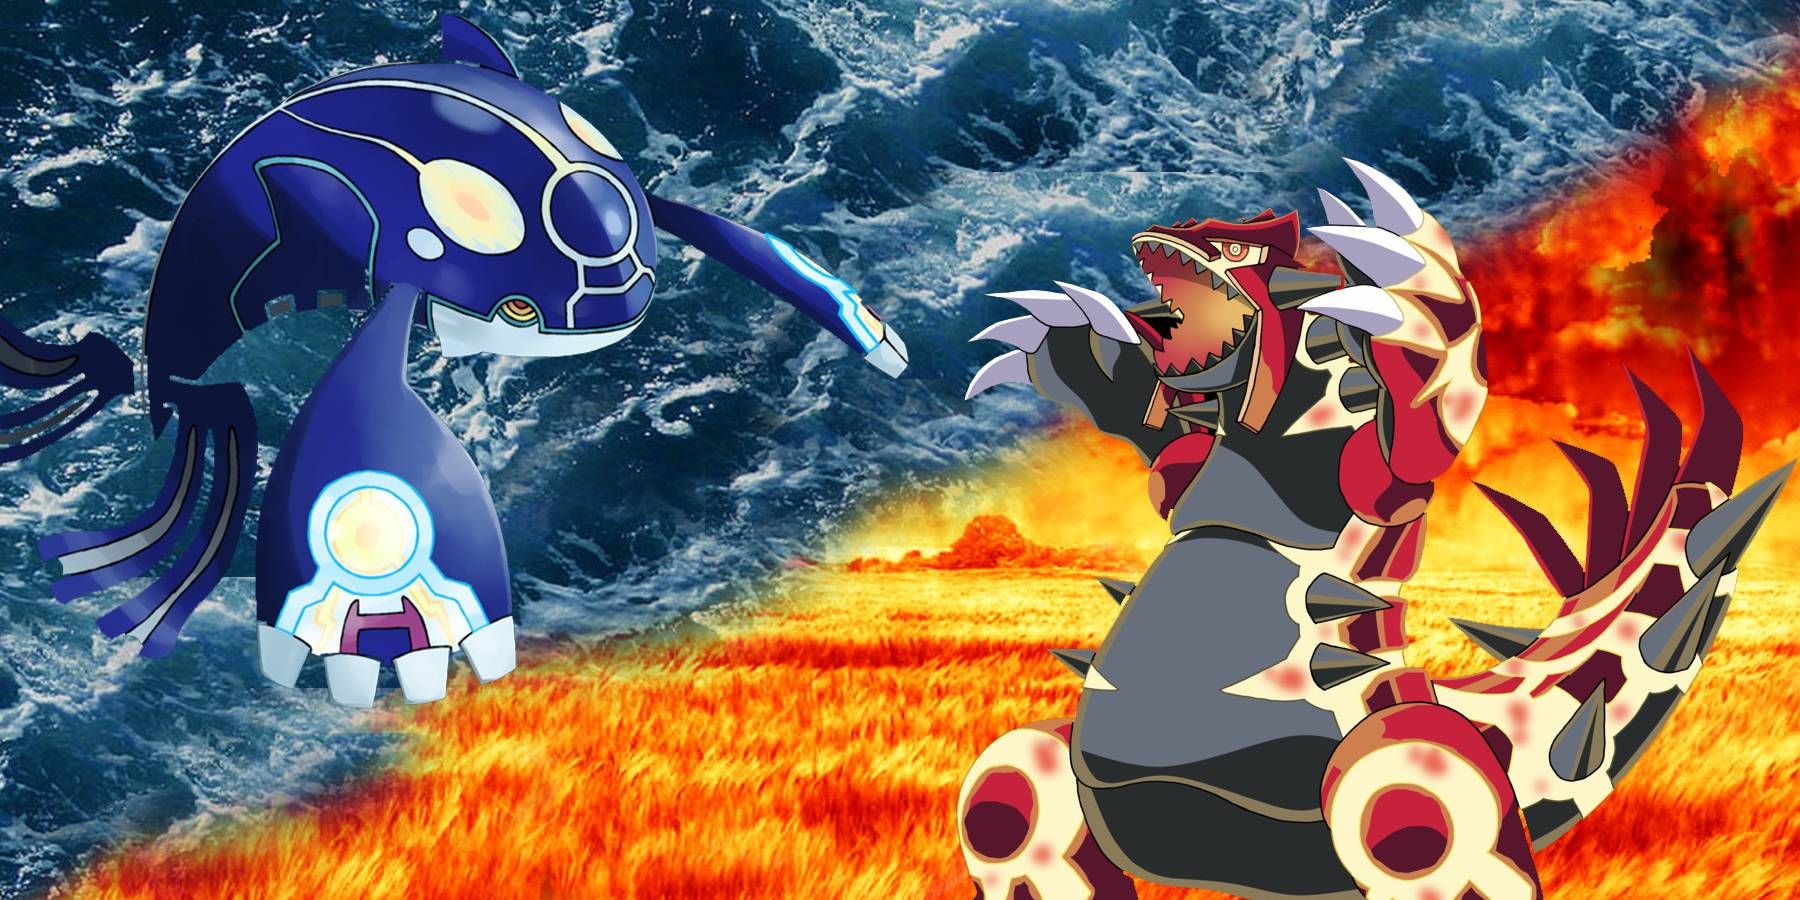 Kyogre Groudon Ruby Sapphire Legendaries Appearing Pokemon Journeys Anime